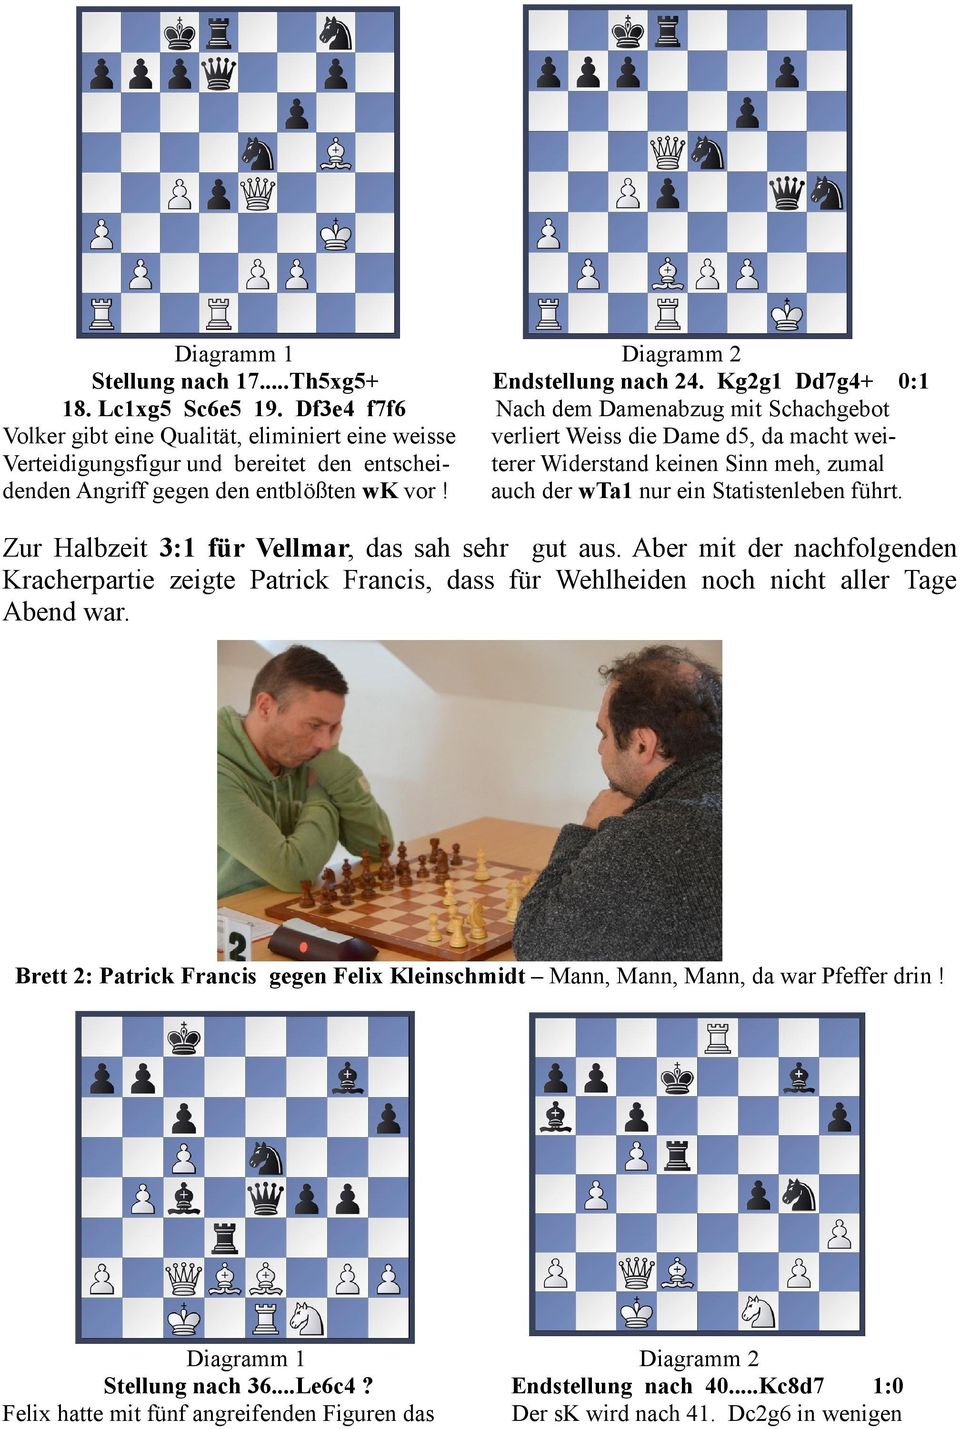 Kg2g1 Dd7g4+ 0:1 Nach dem Damenabzug mit Schachgebot verliert Weiss die Dame d5, da macht weiterer Widerstand keinen Sinn meh, zumal auch der wta1 nur ein Statistenleben führt.